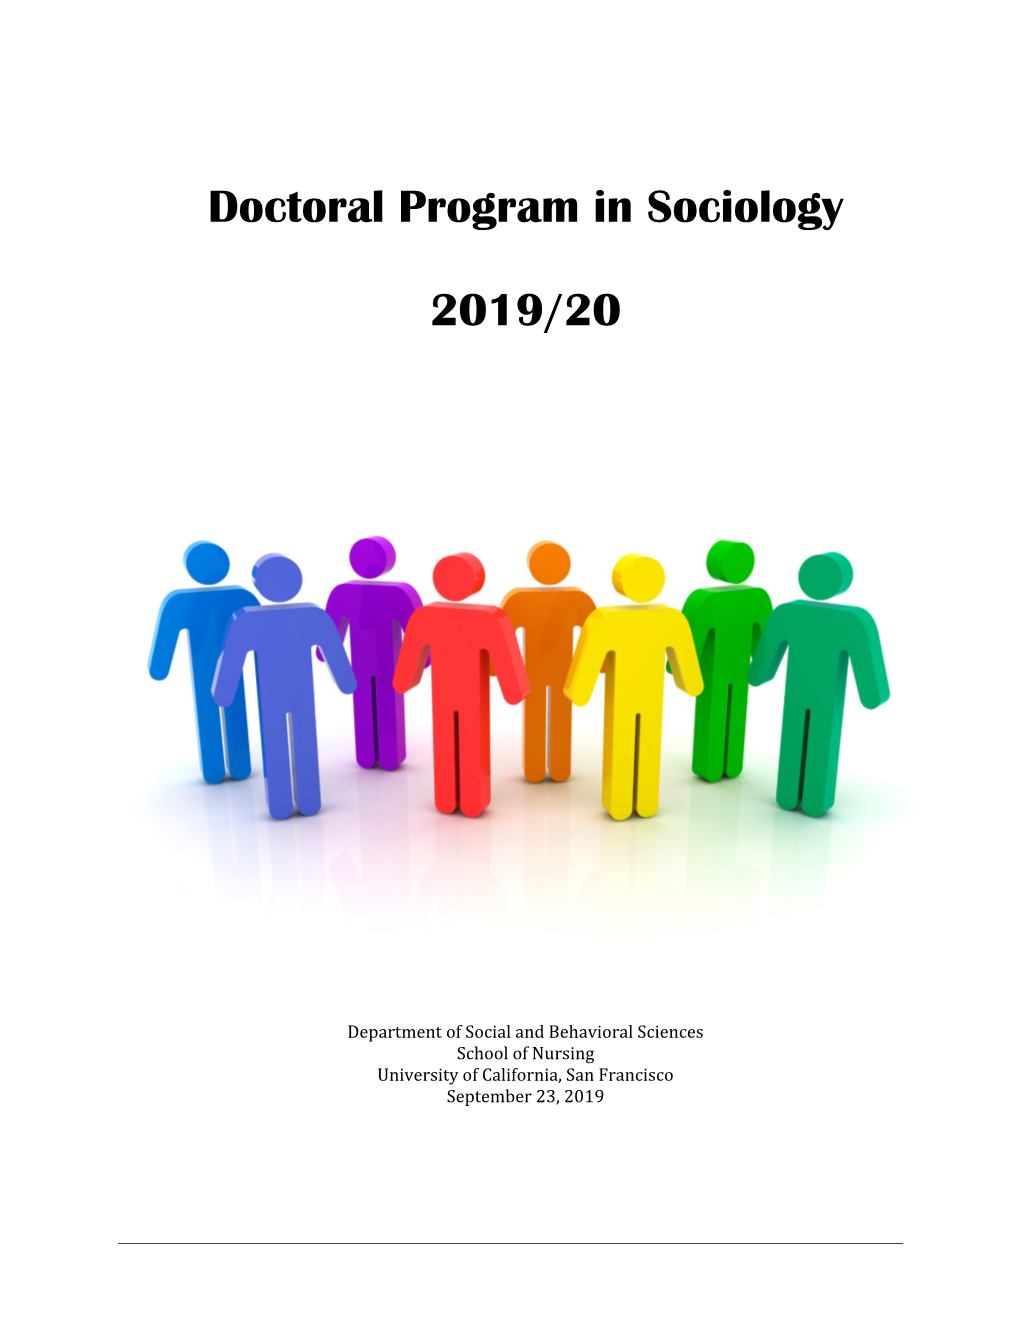 Sociology Student Handbook